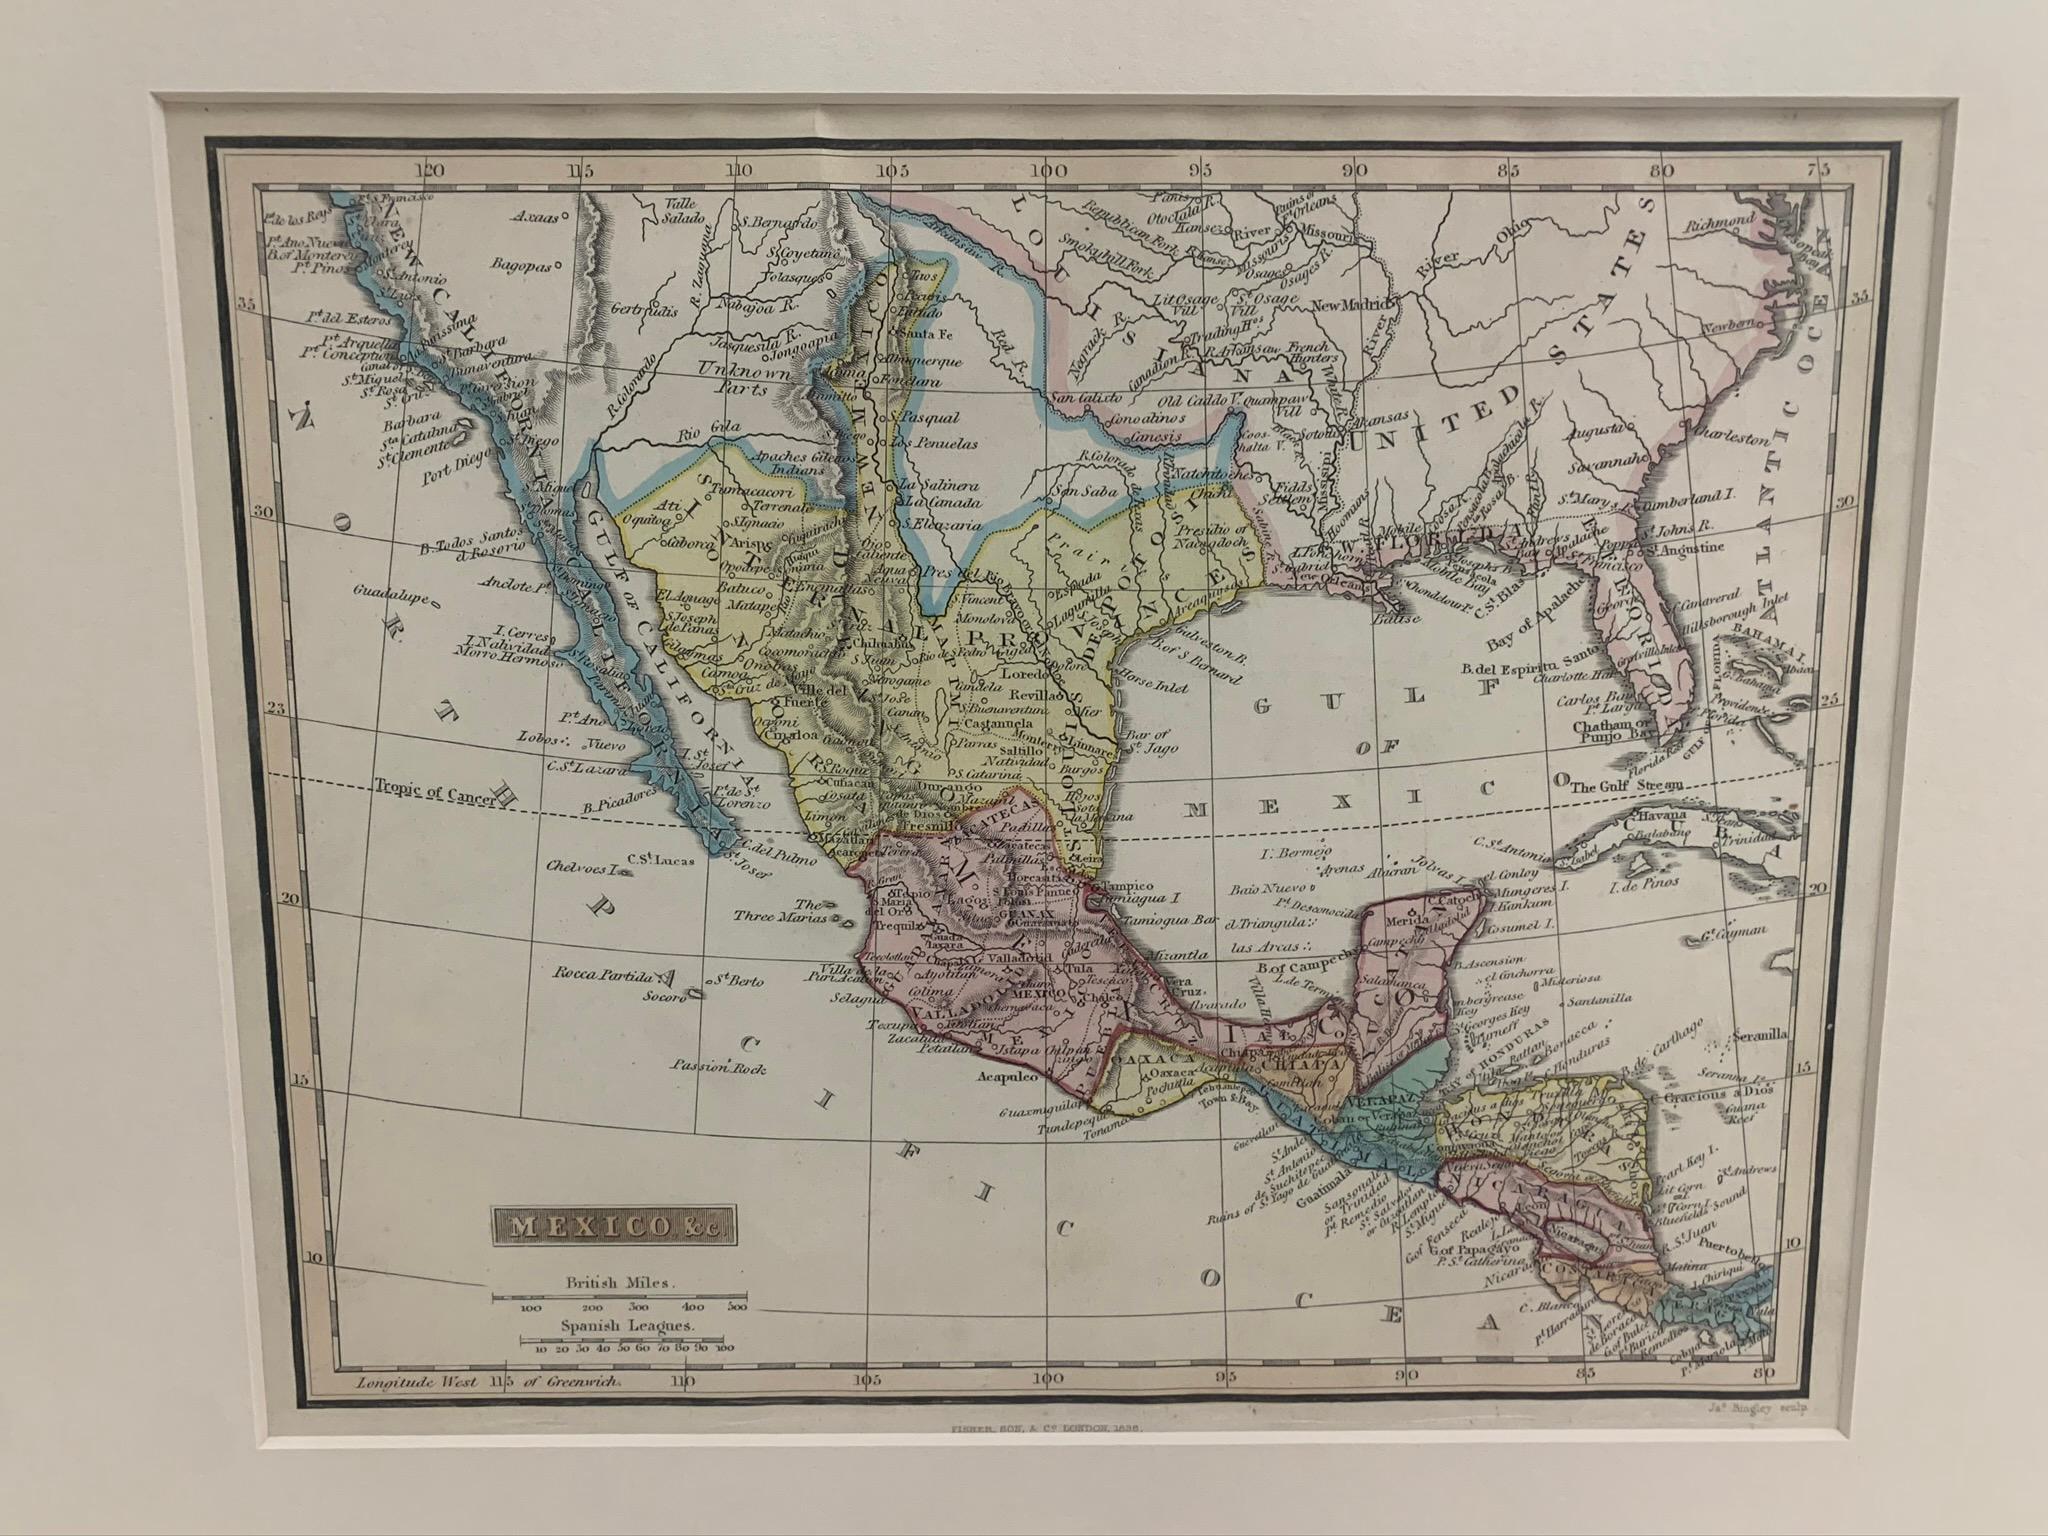 Carte encadrée de 1838 du Mexique et du golfe du Mexique. Imprimé par Fisher, Son & Co. de Londres en 1838. État de l'encadrement tel qu'il a été trouvé. La carte n'a pas été examinée en dehors du cadre. 